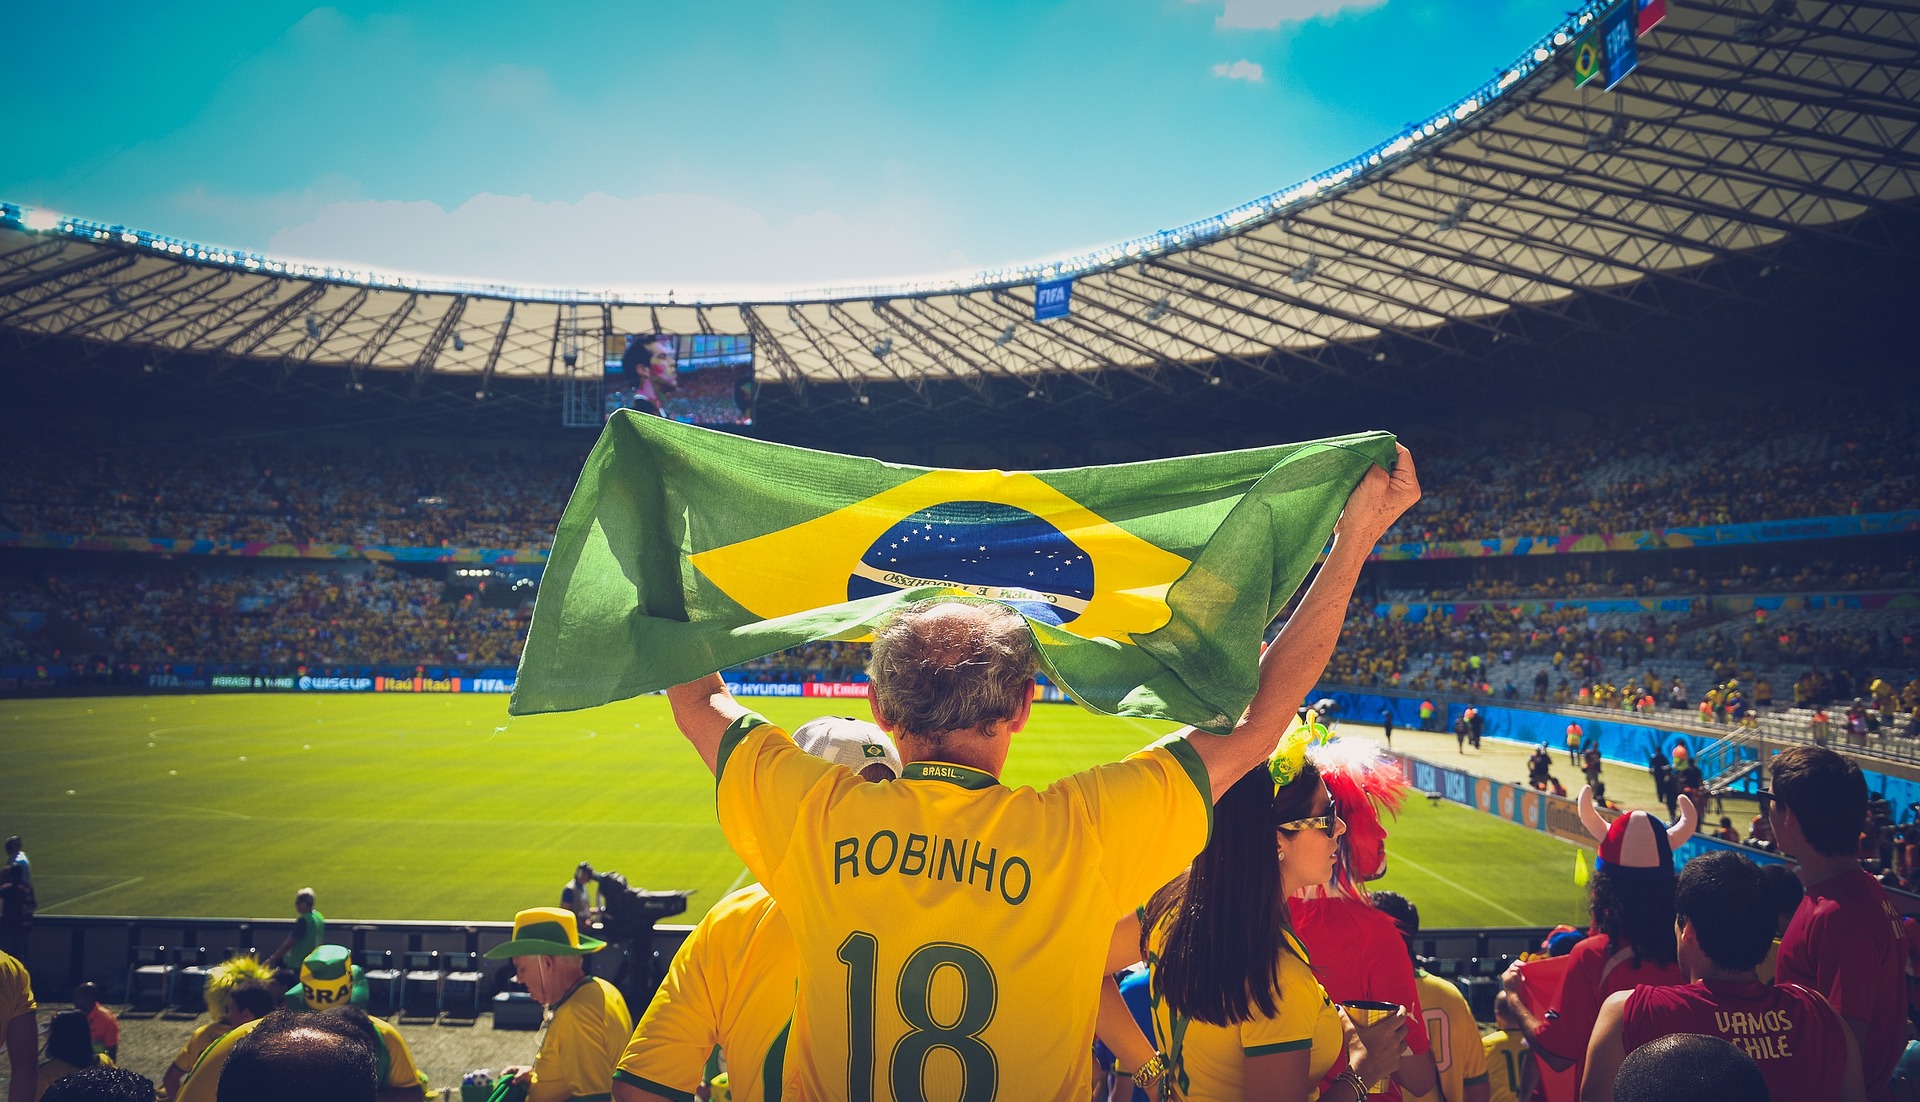 Folga para ver jogo do Brasil na Copa precisa ser acordada com o patrão